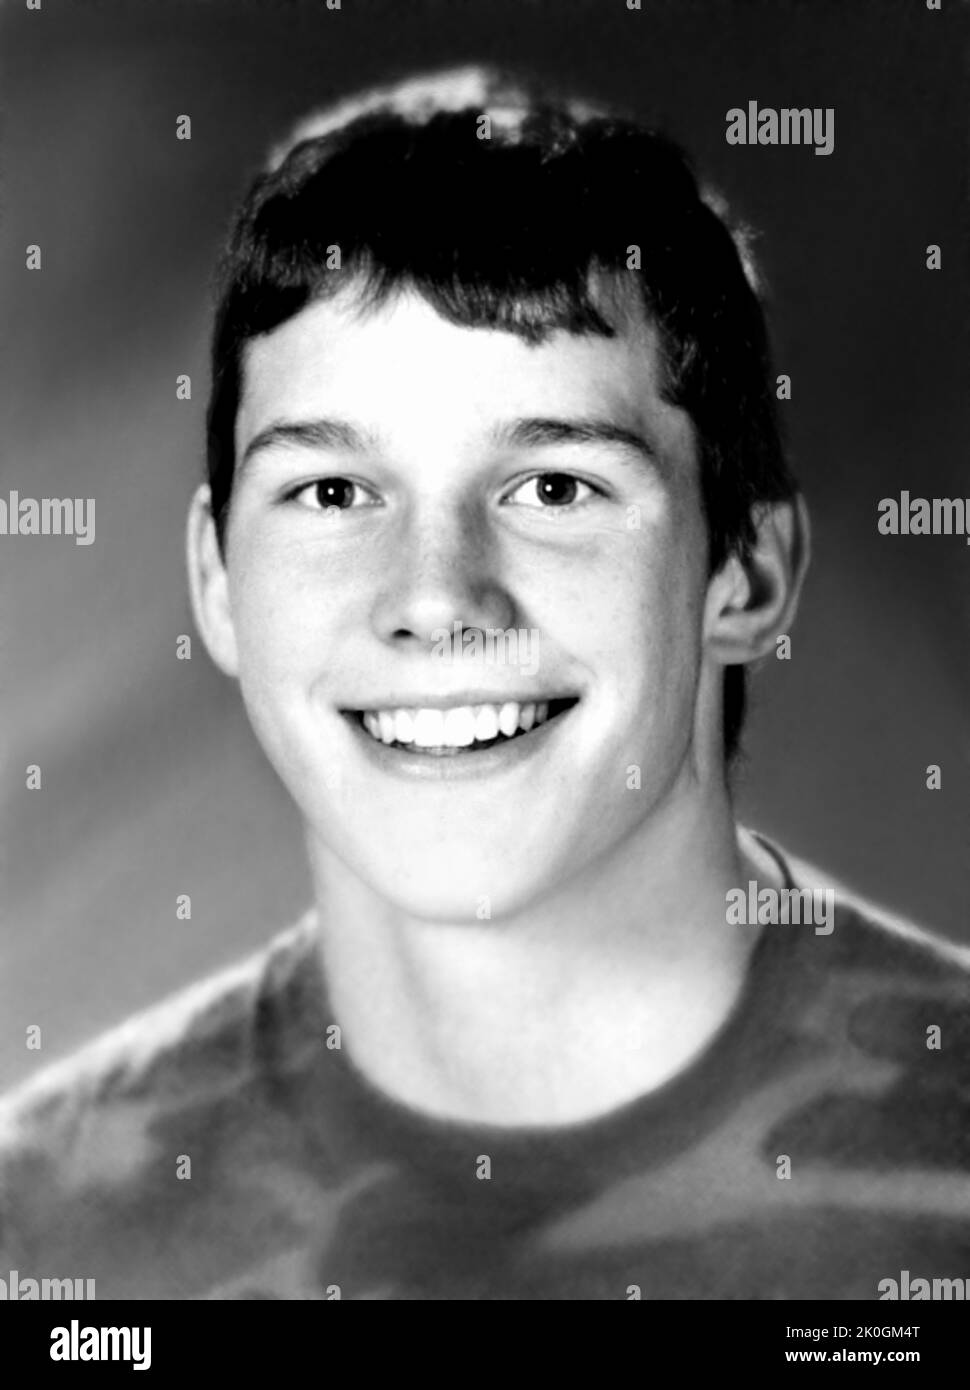 1996 c., USA : il celebre attore americano CHRIS PRATT ( nato il 21 giugno 1979 ), quando era un ragazzo di 17 anni . Fotografo sconosciuto dall'Annuario della High School . - STORIA - FOTO STORICHE - ATTORE - FILM - CINEMA - SESSO SIMBOLO - personalità da TEENAGER - RAGAZZO - da giovane - personalità quando era giovane - INFANZIA - INFANZIA - sorriso - sorriso - RITRATTO - RITRATTO --- ARCHIVIO GBB Foto Stock